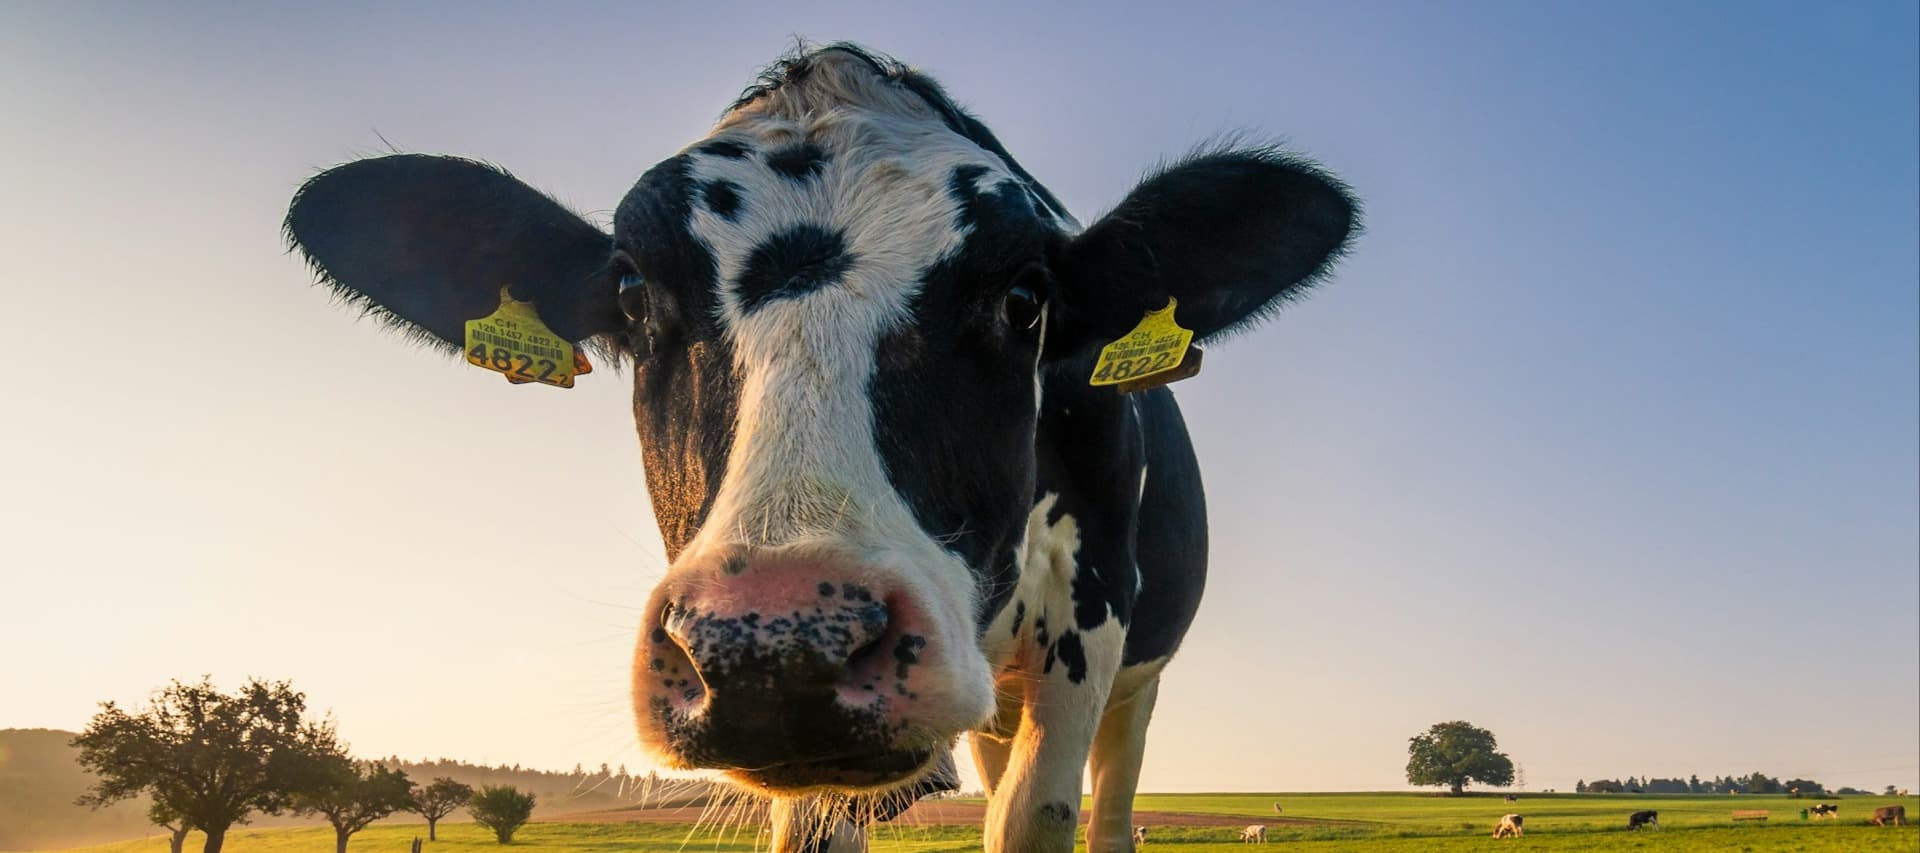 Фото новости: "Магазины Marks & Spencer вложат $1,3 млн в диету для коров"